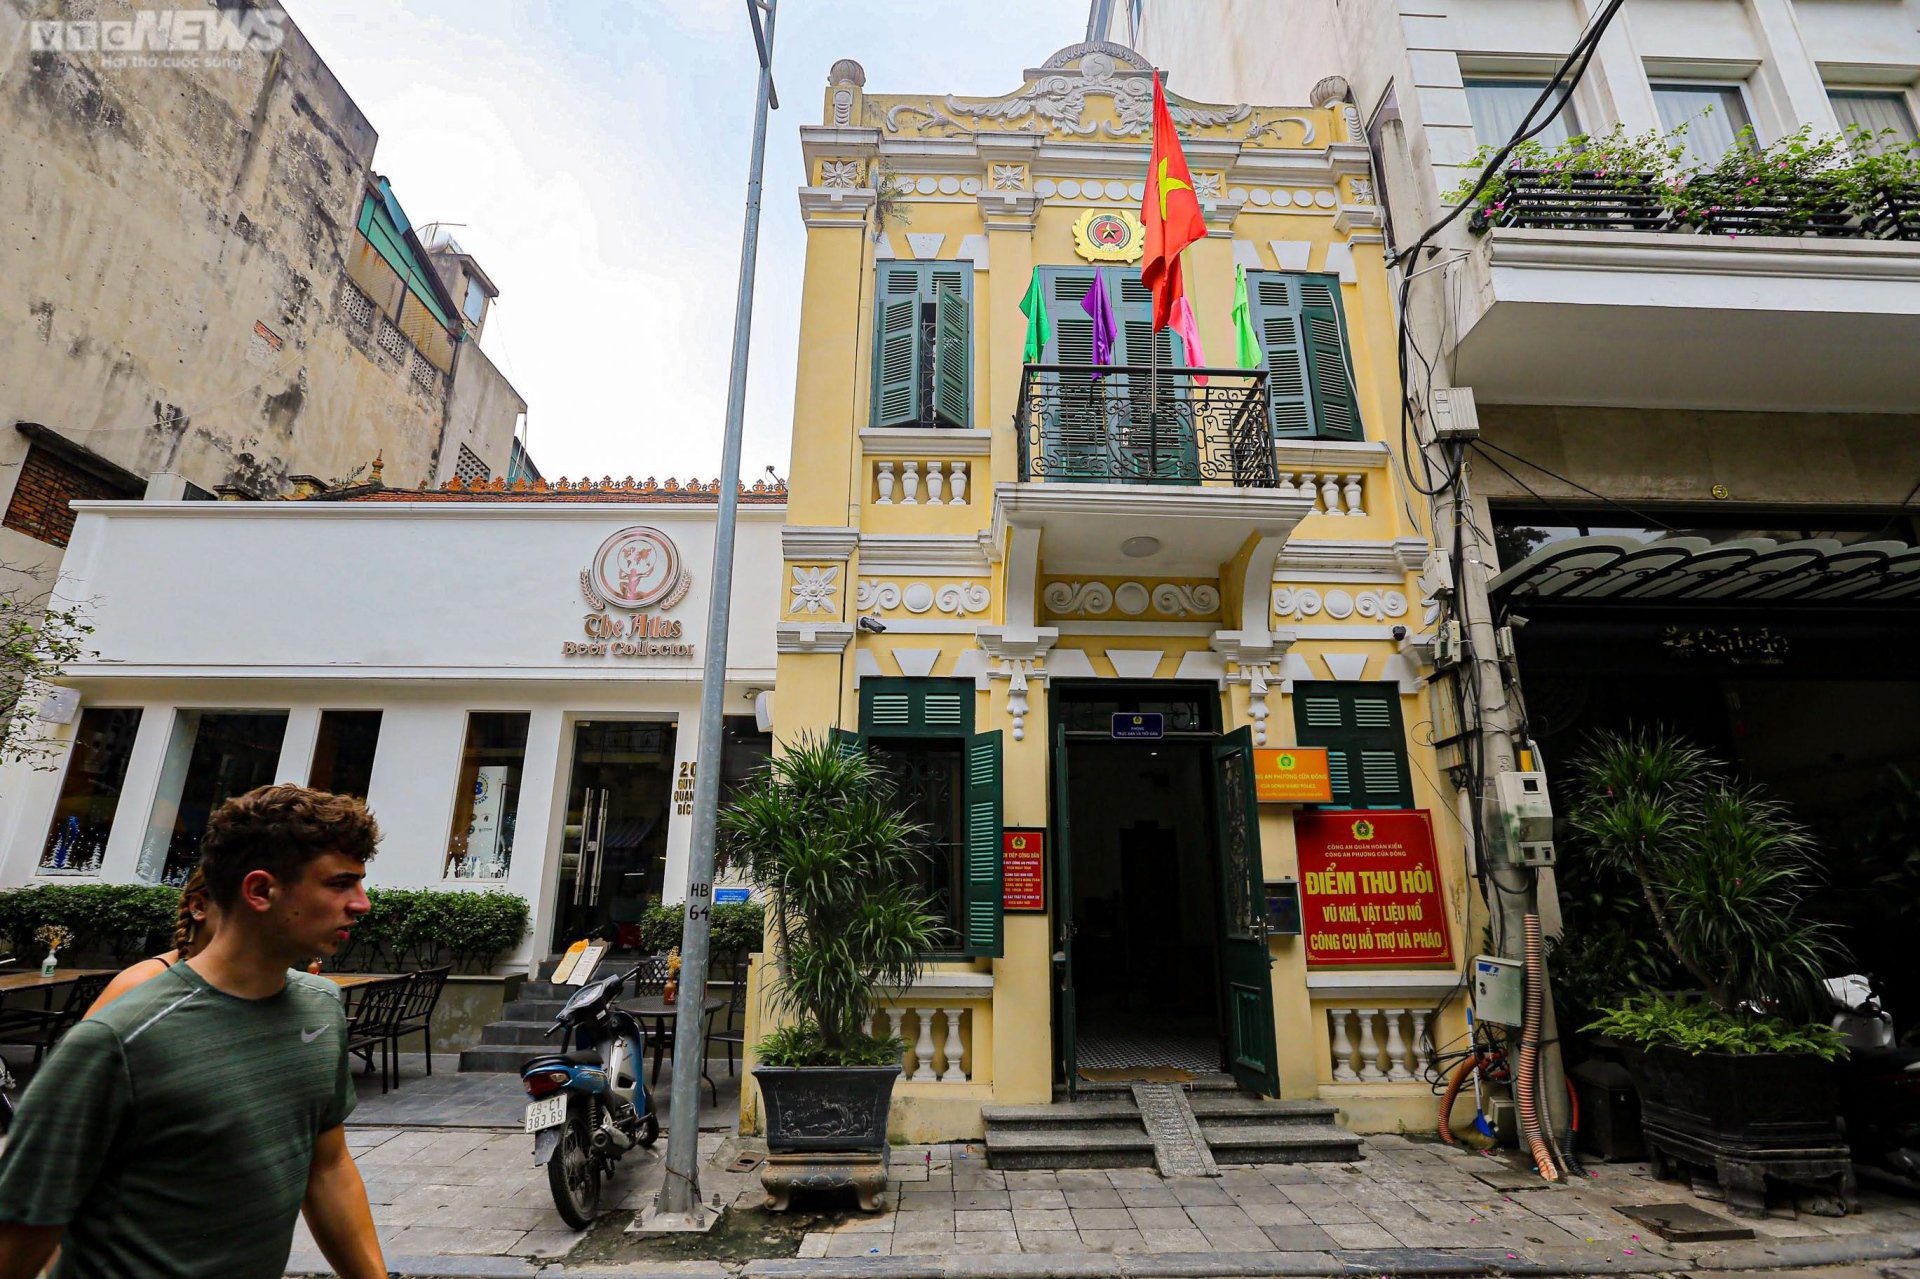 Ngắm những công trình kiến trúc Pháp cổ ở Hà Nội sau khi được trùng tu - Ảnh 17.